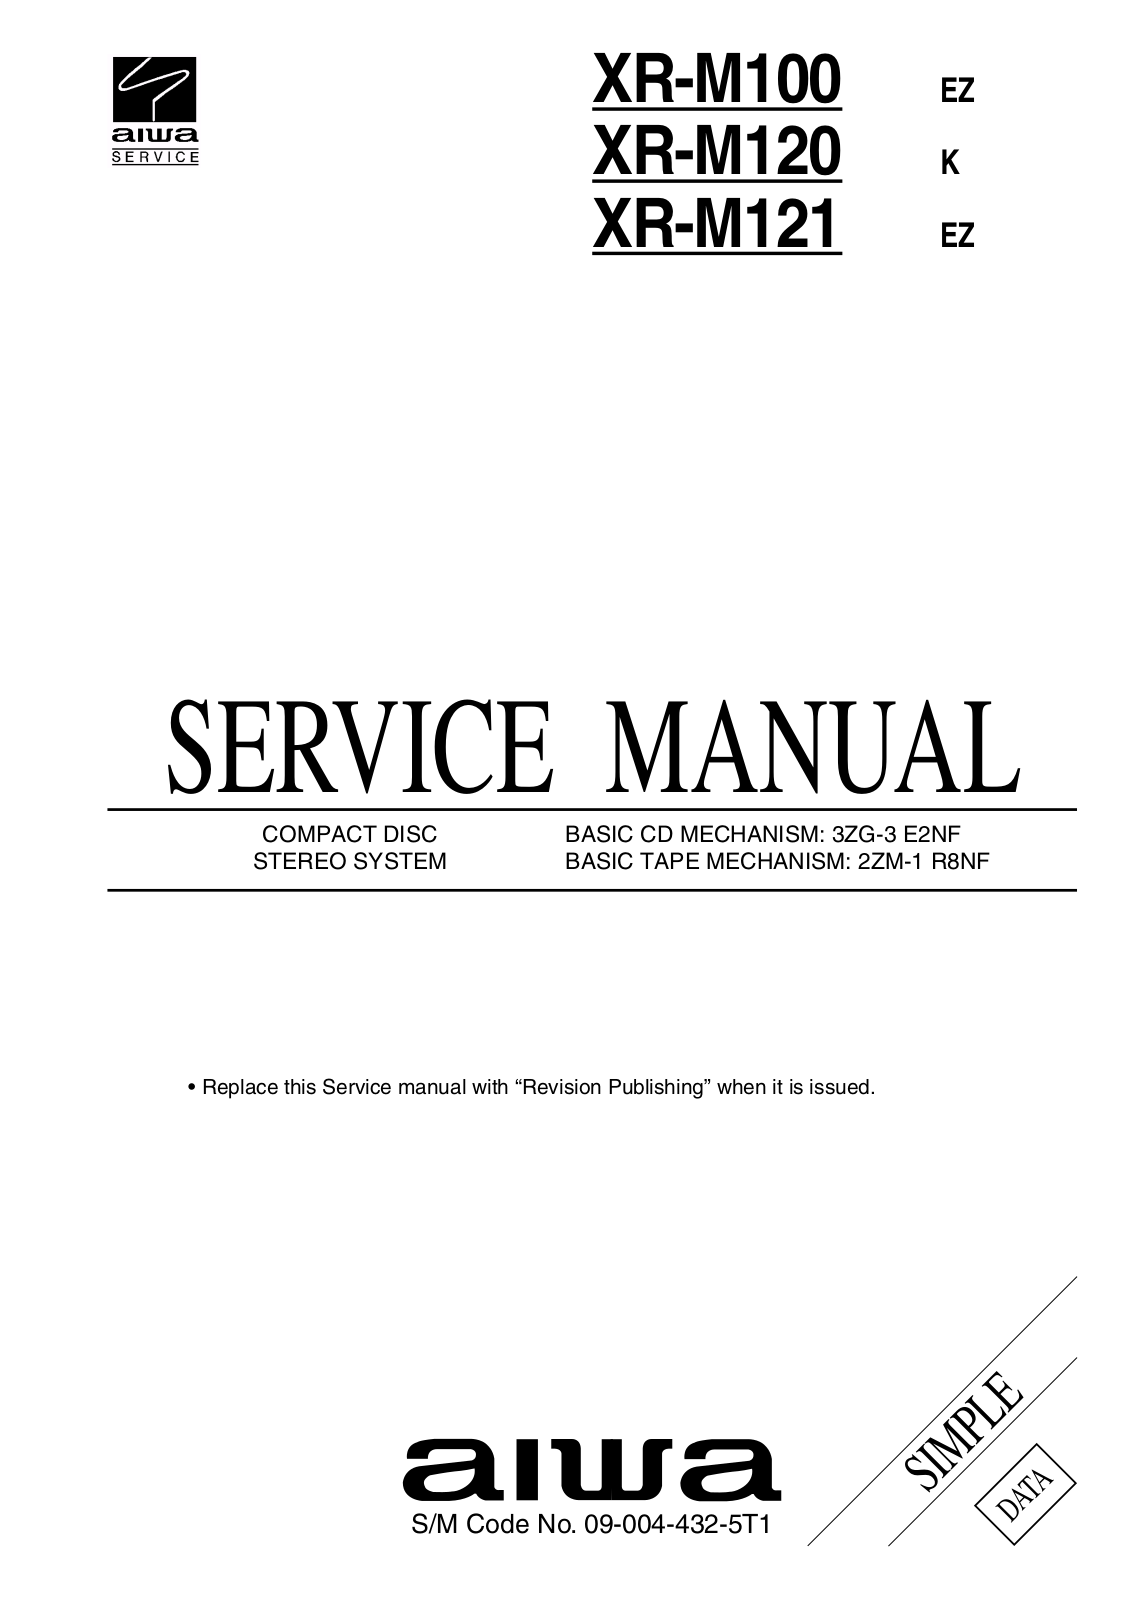 Aiwa XR-M100, XR-M121 Service Manual